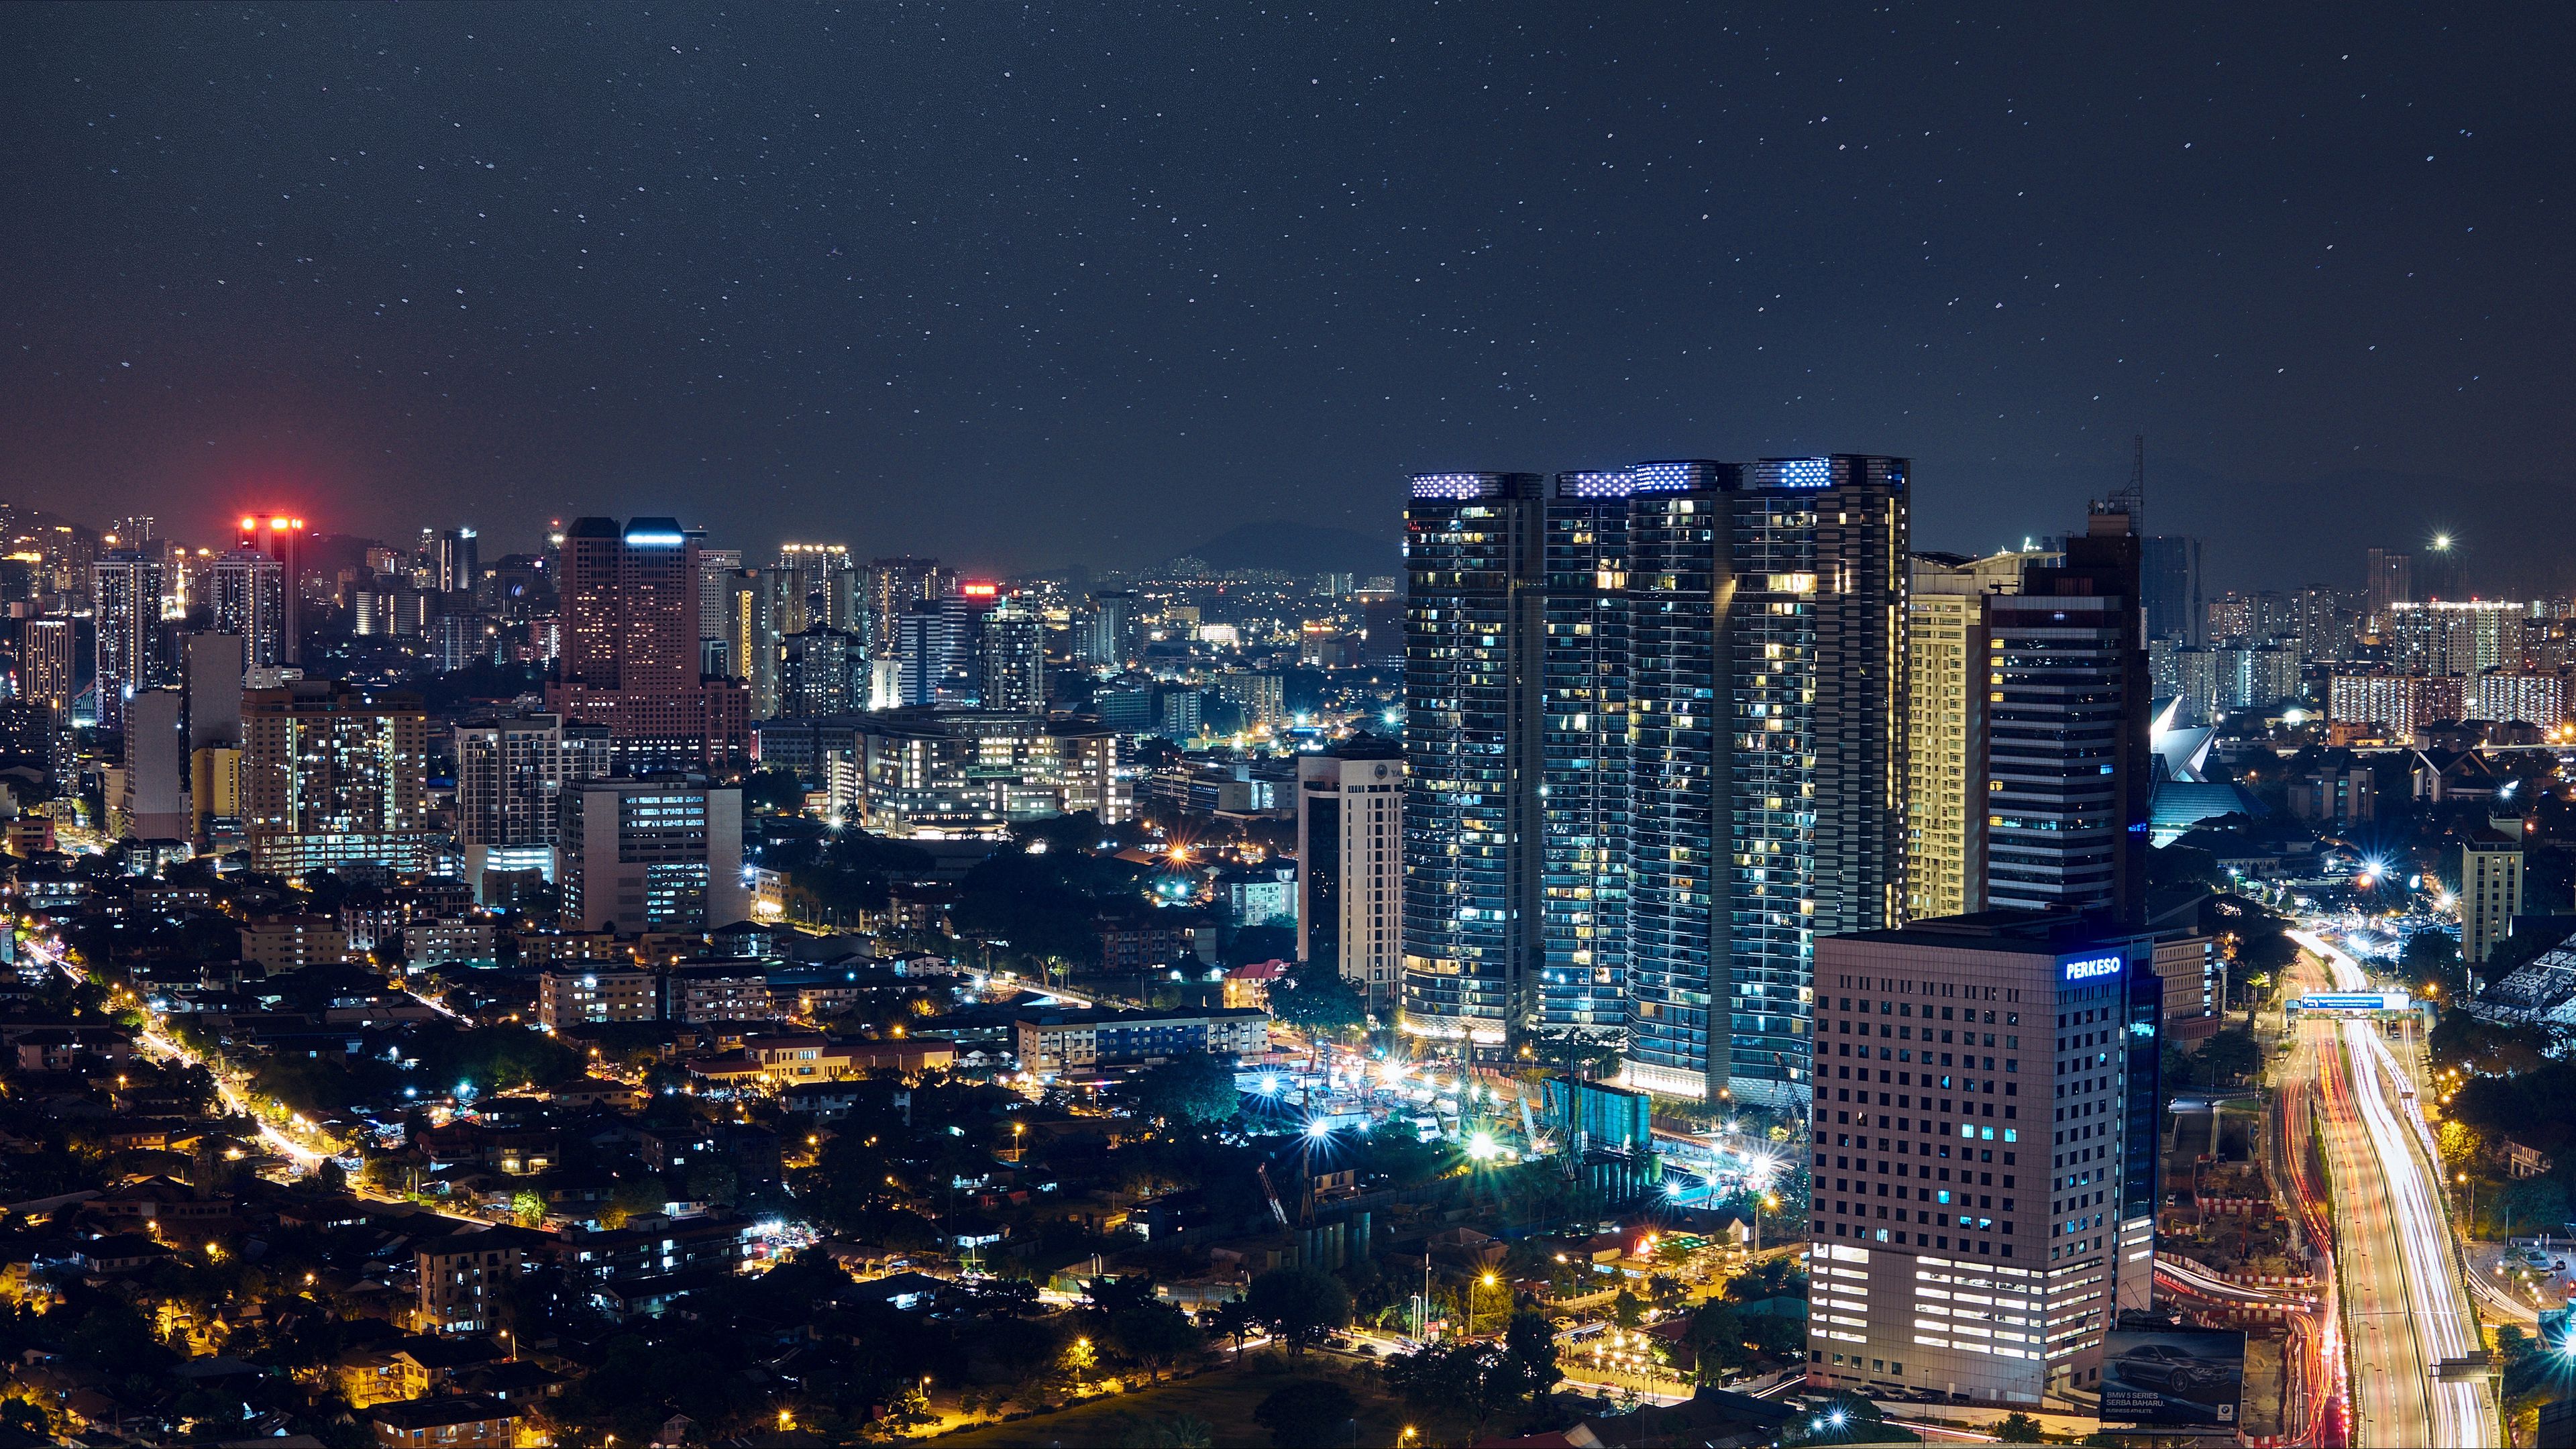 Tải ngay hình nền đêm thành phố với độ phân giải 3840x2160, tái hiện lại vẻ đẹp trầm lắng, lững lờ của thành phố đêm với những ánh đèn lung linh vốn mang đến cho bạn một cảm giác thư giãn và thoải mái.